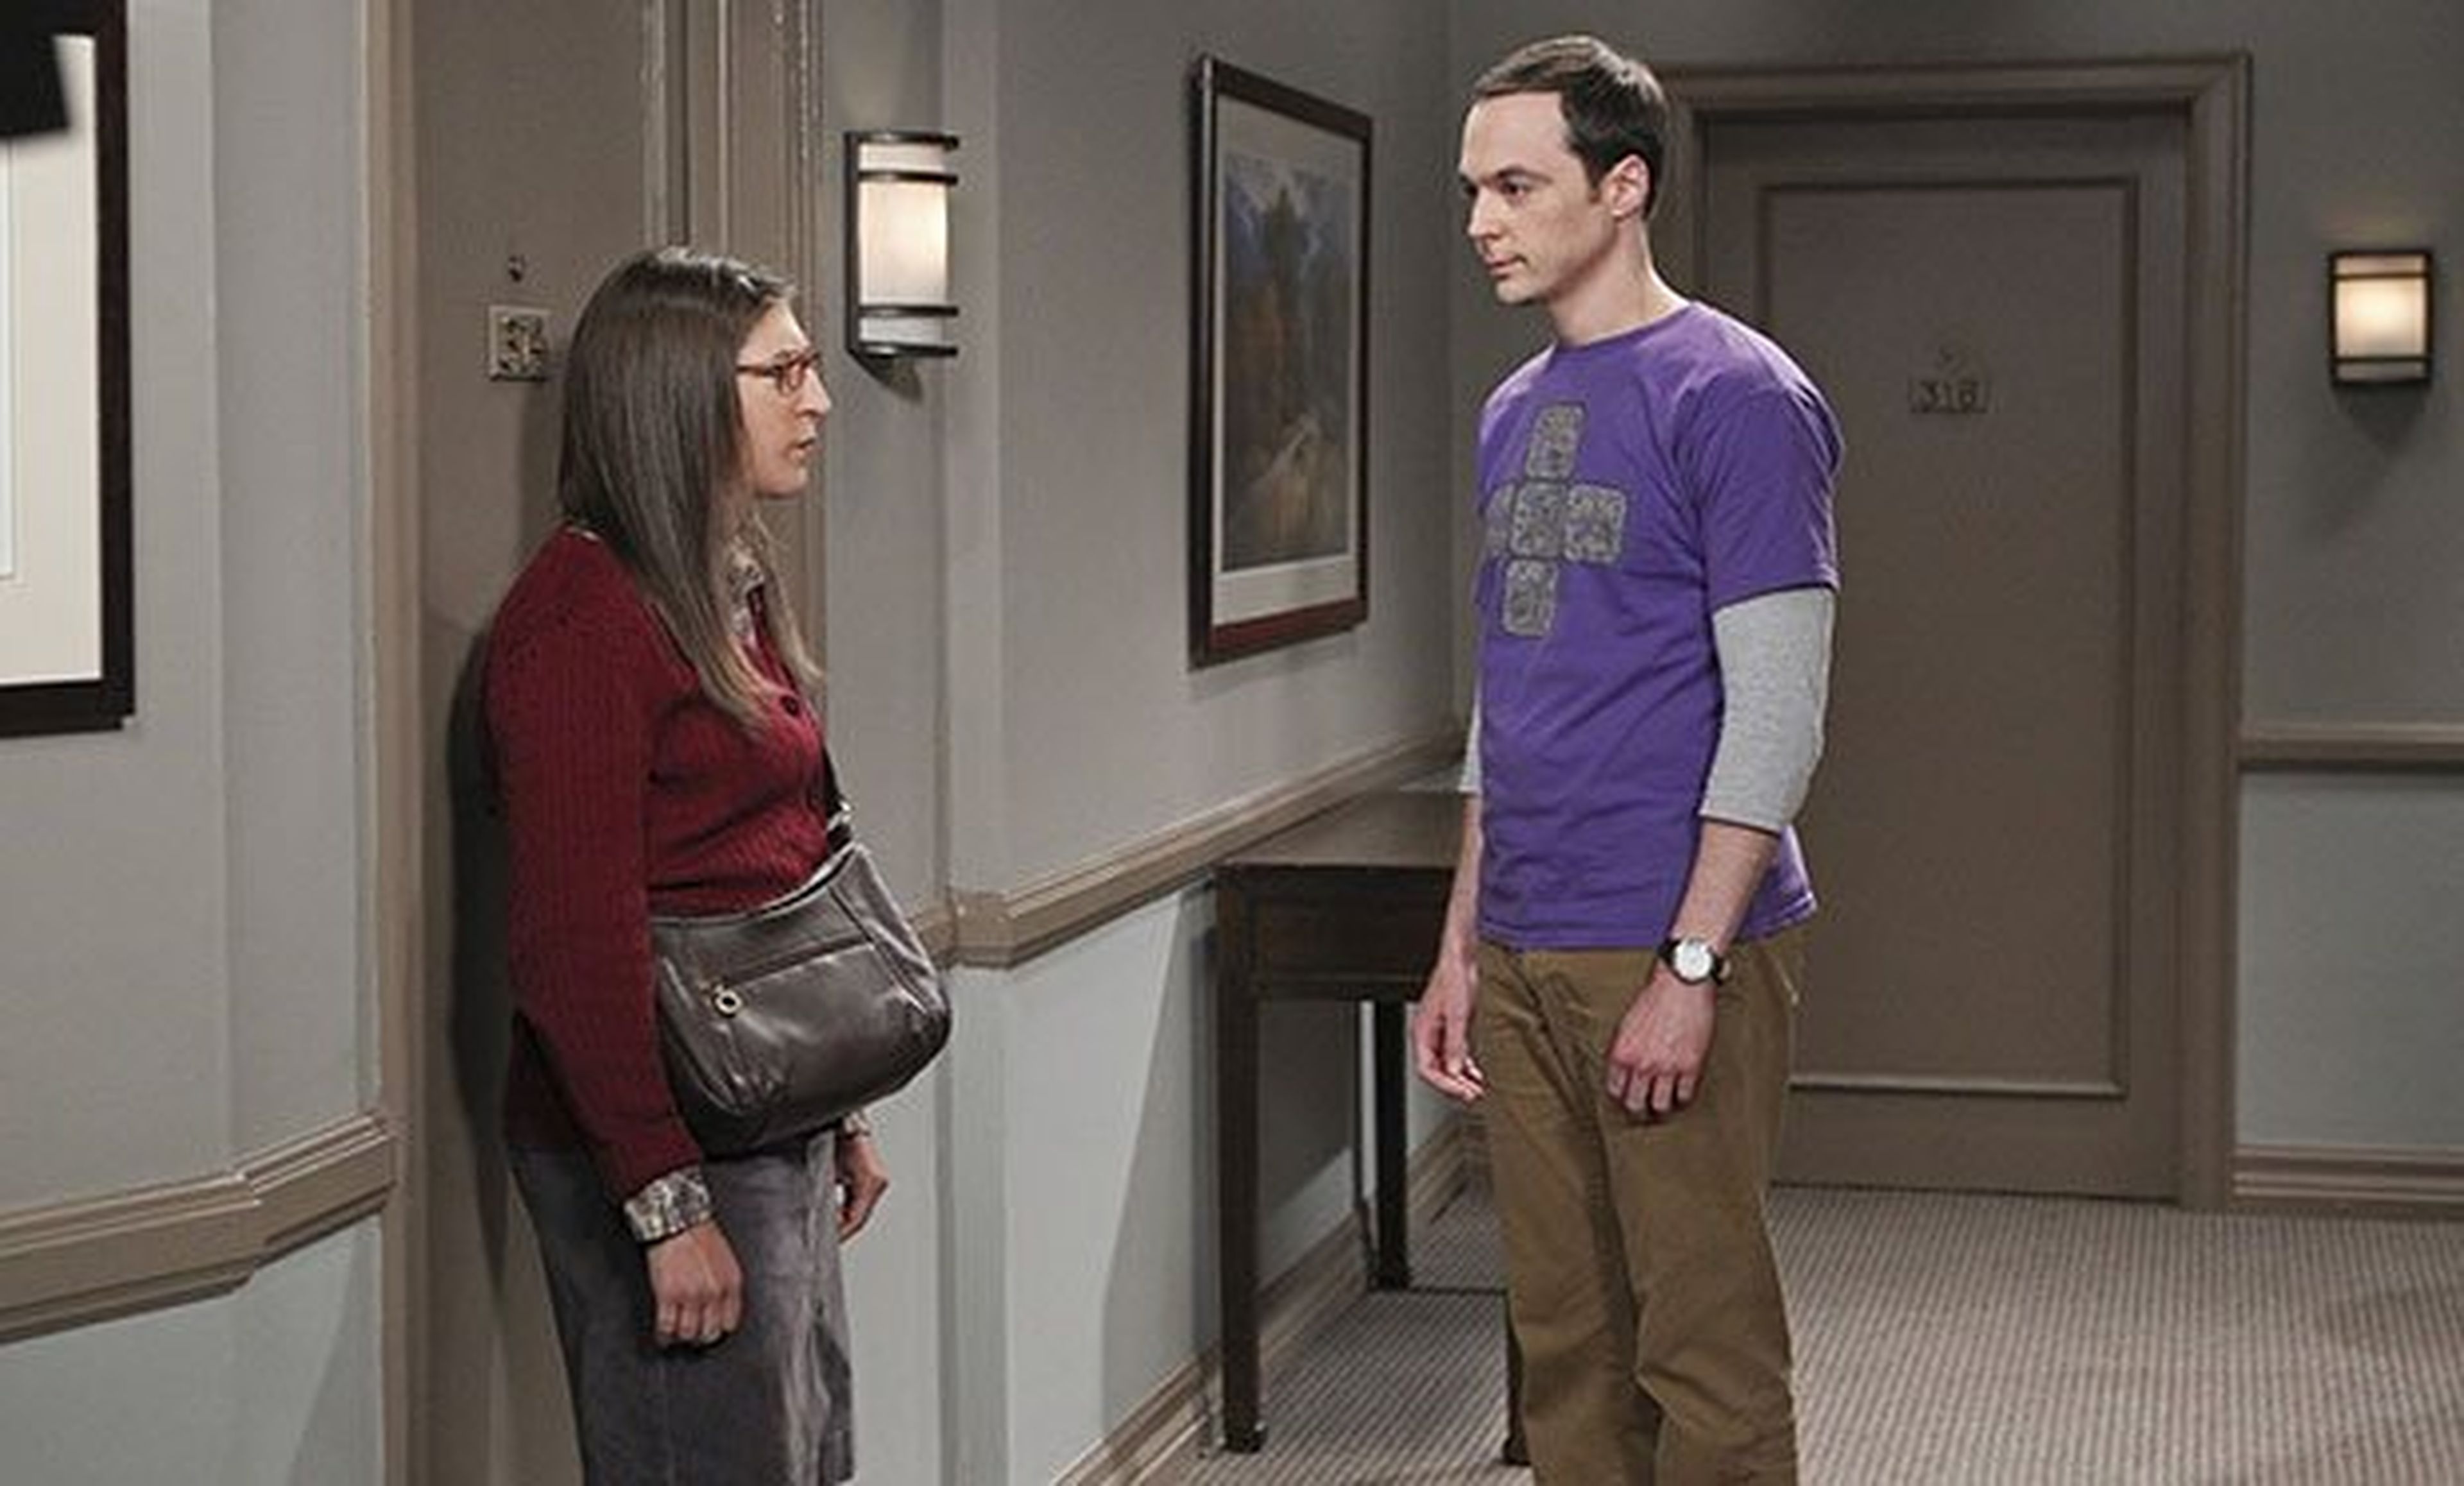 The Big Bang Theory 9: nuevos fichajes entorpecerán las relaciones amorosas de los protagonistas